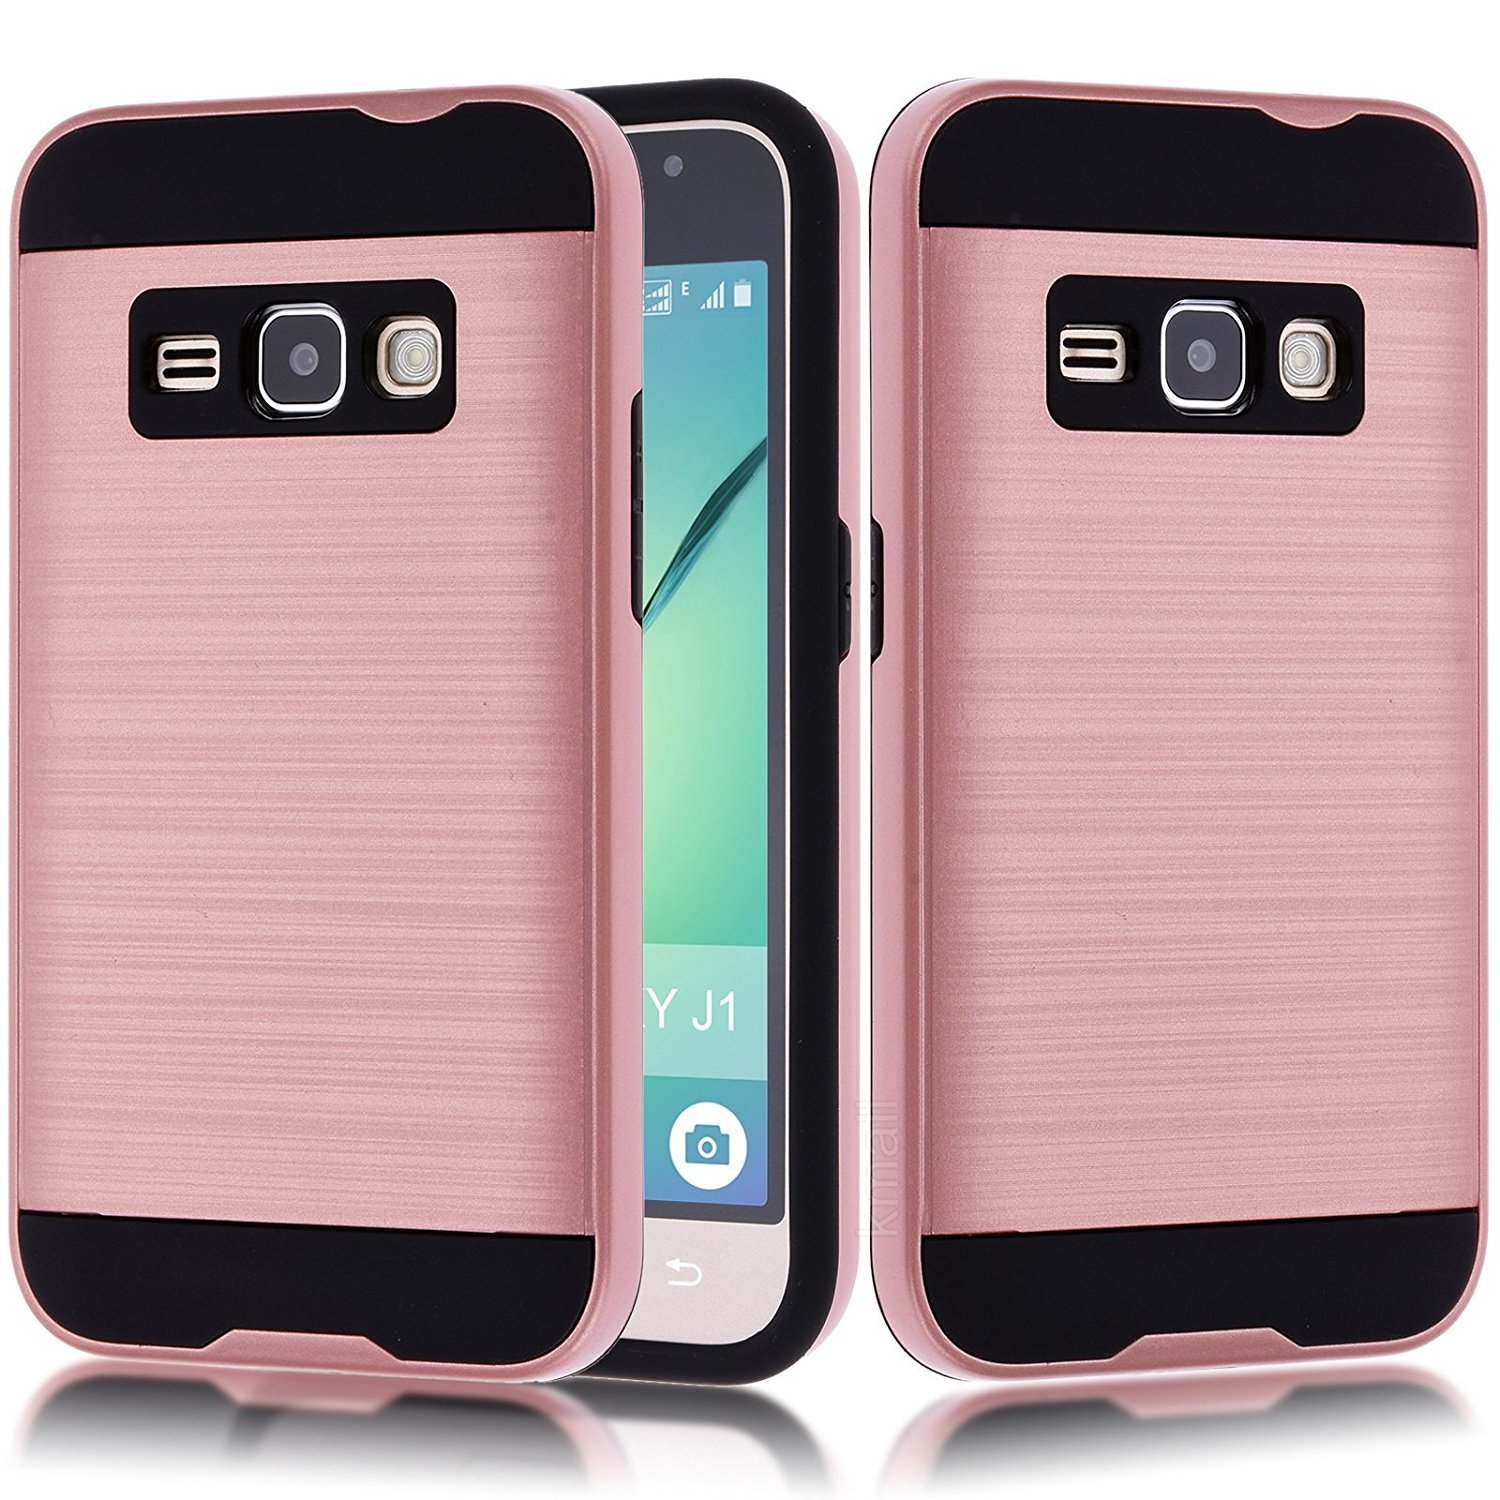 Samsung Galaxy J1 (2016) / Amp 2 / Express 3 / Galaxy Luna Armor Hybrid Case (Rose Gold)